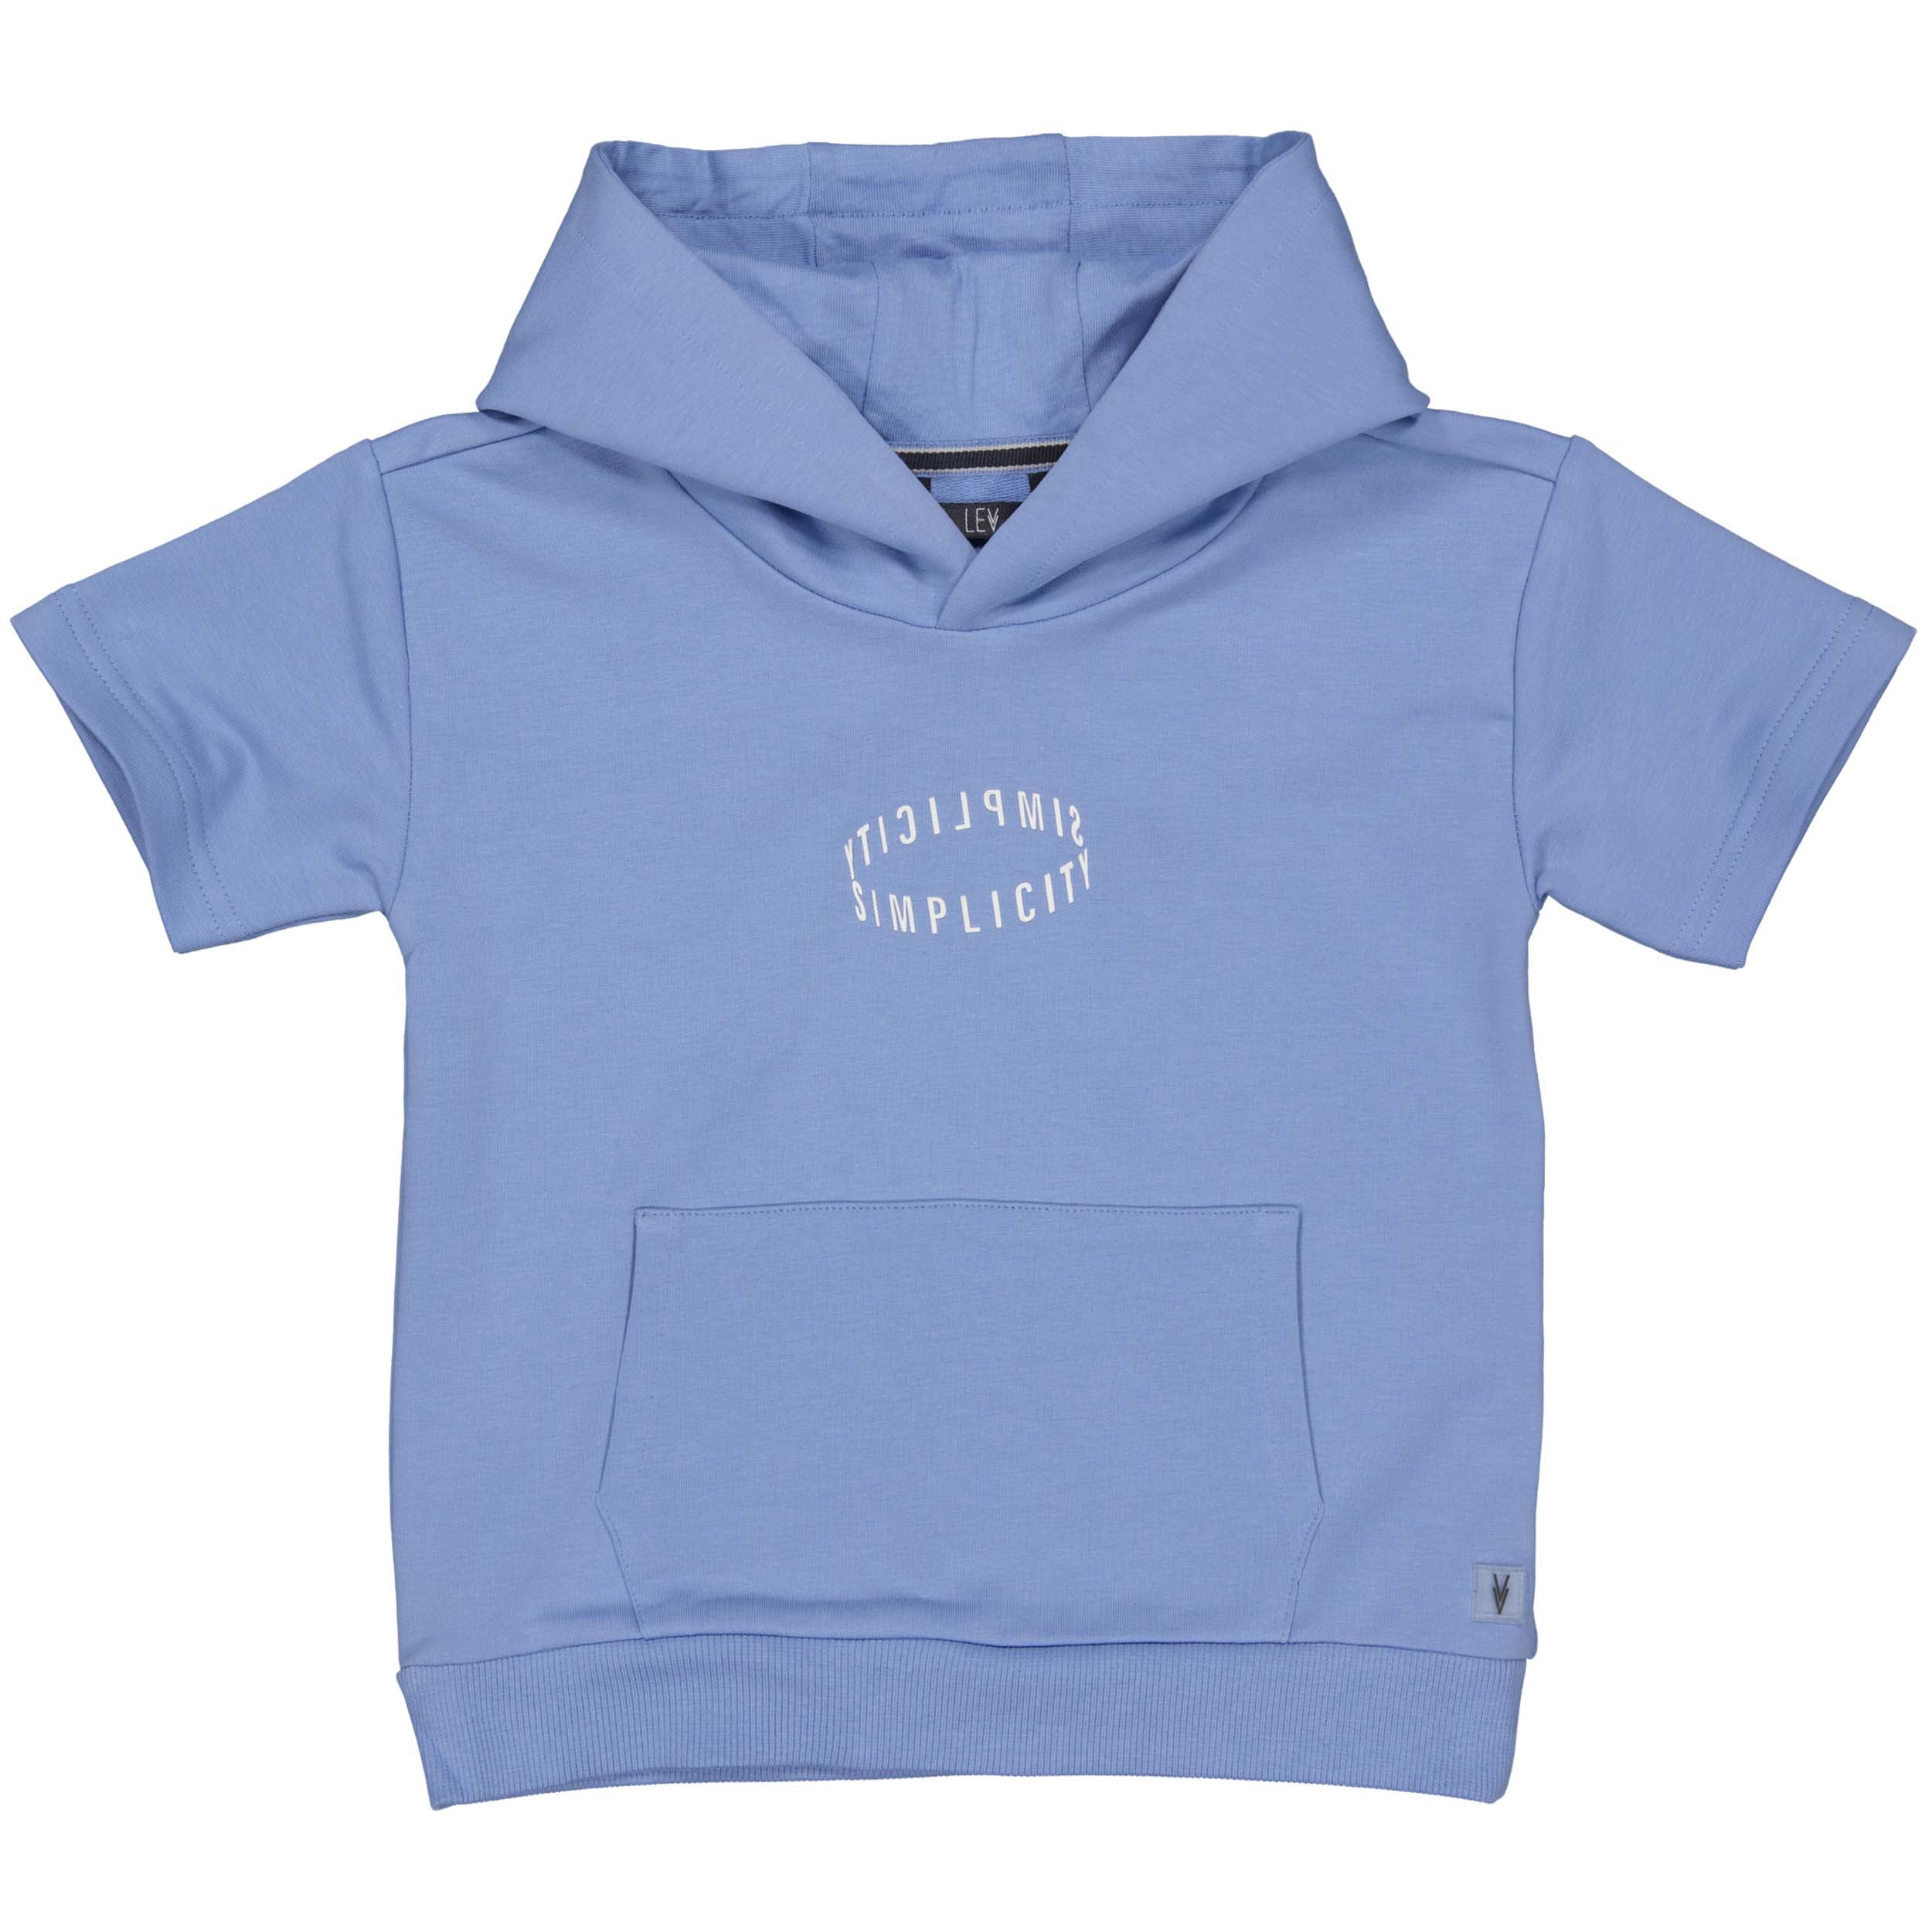 Jongens Shortsleeve Sweater MELLELS242 van Little Levv in de kleur Mid Blue in maat 128.